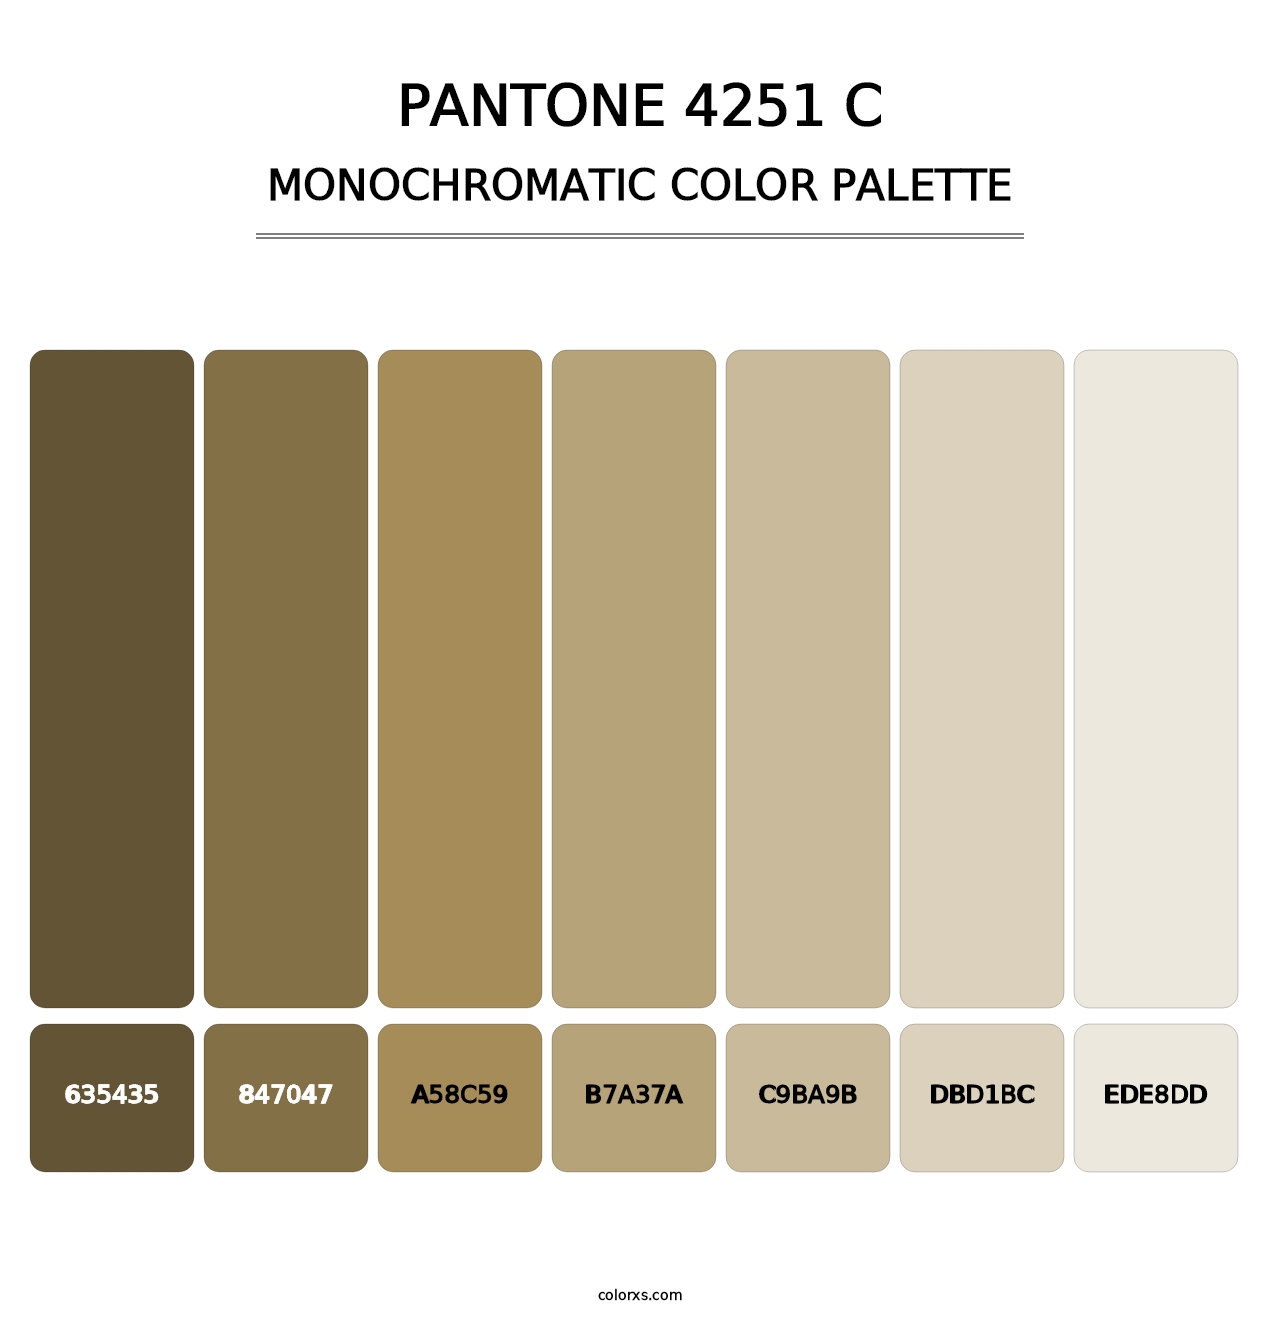 PANTONE 4251 C - Monochromatic Color Palette